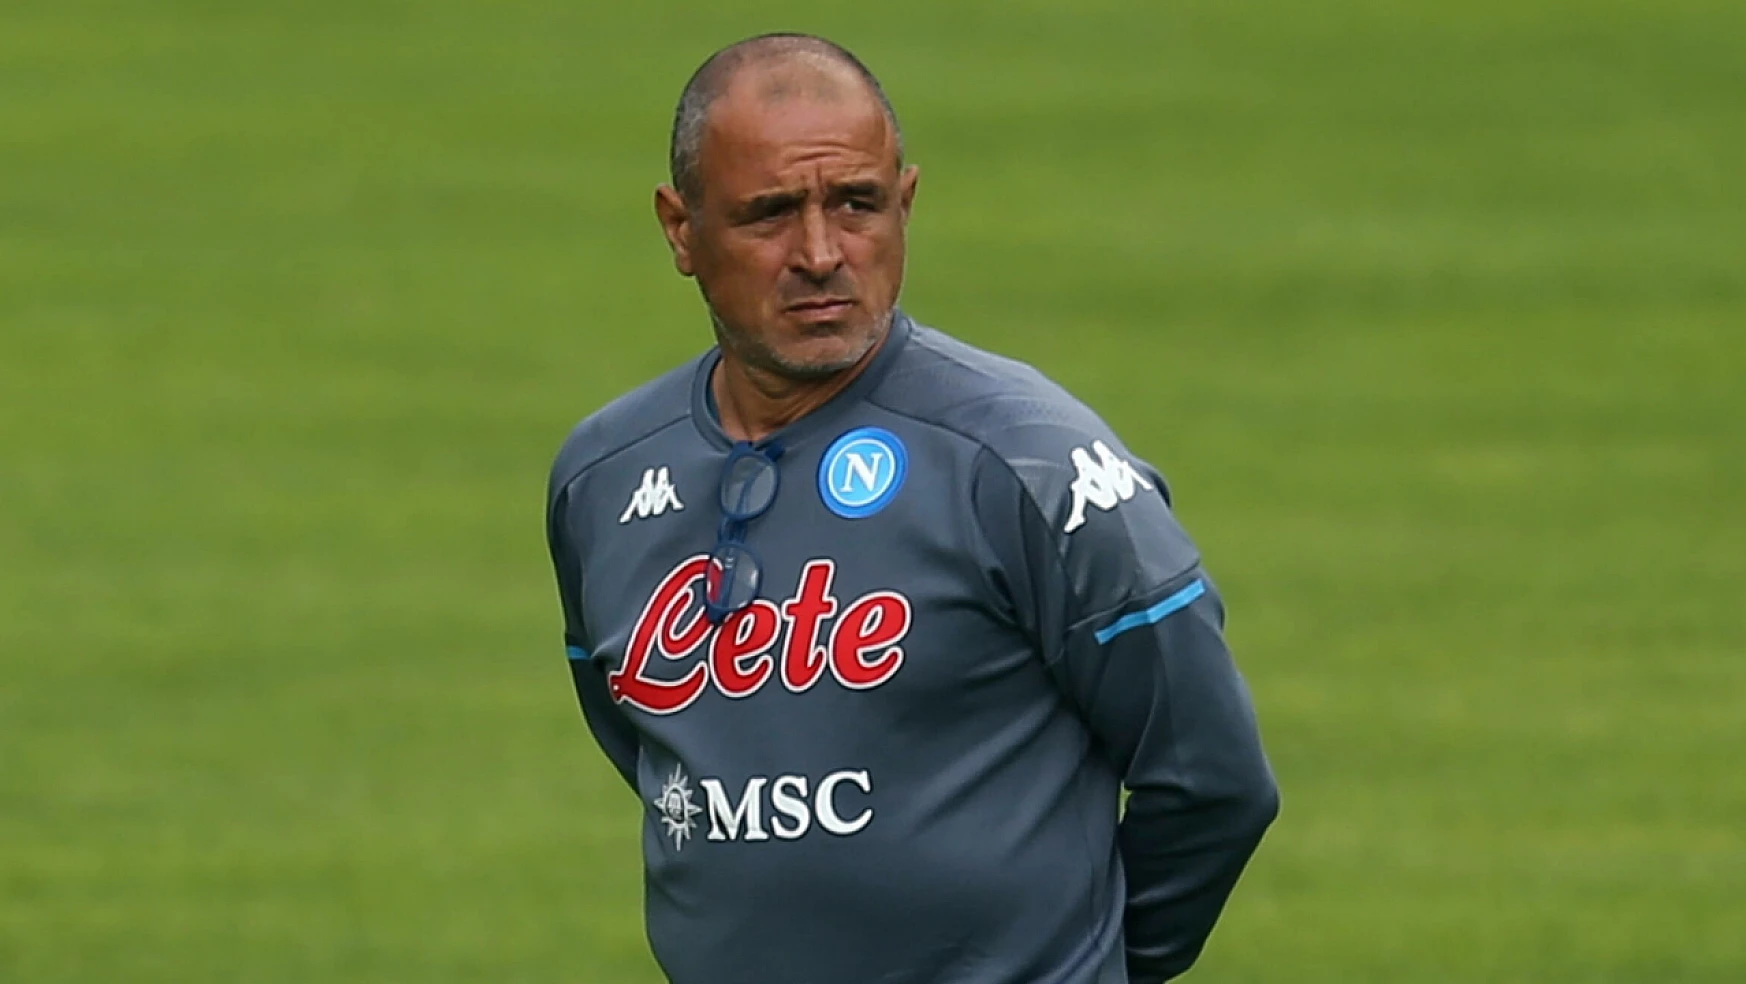 Napoli'nin yeni teknik direktörü Francesco Calzona oldu